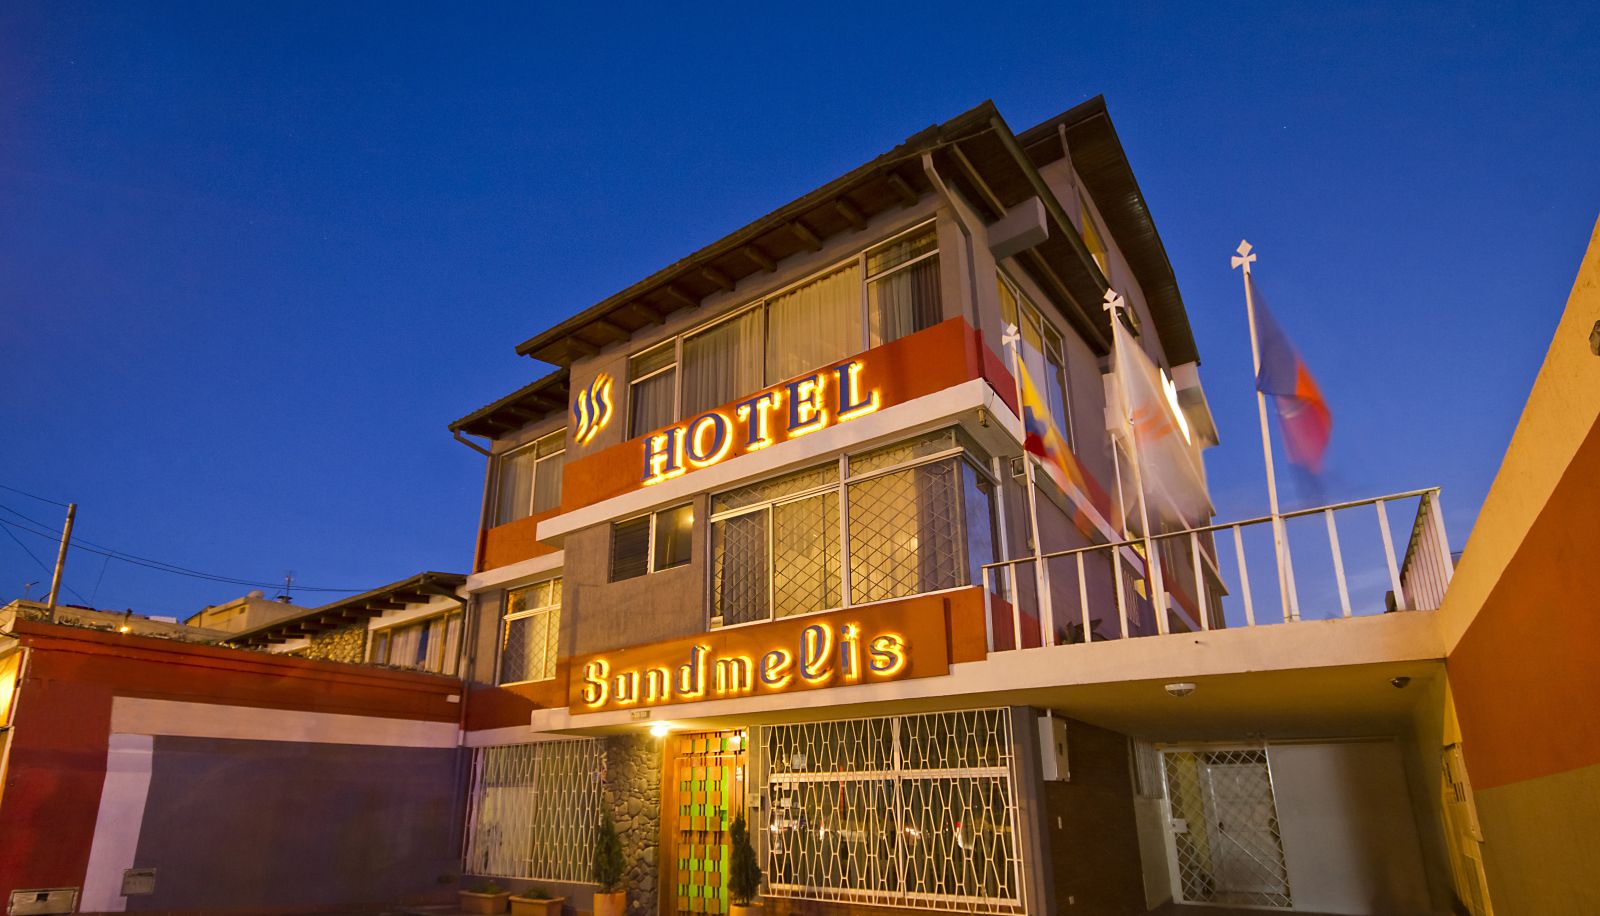 Hotel Sandmelis (Quito)